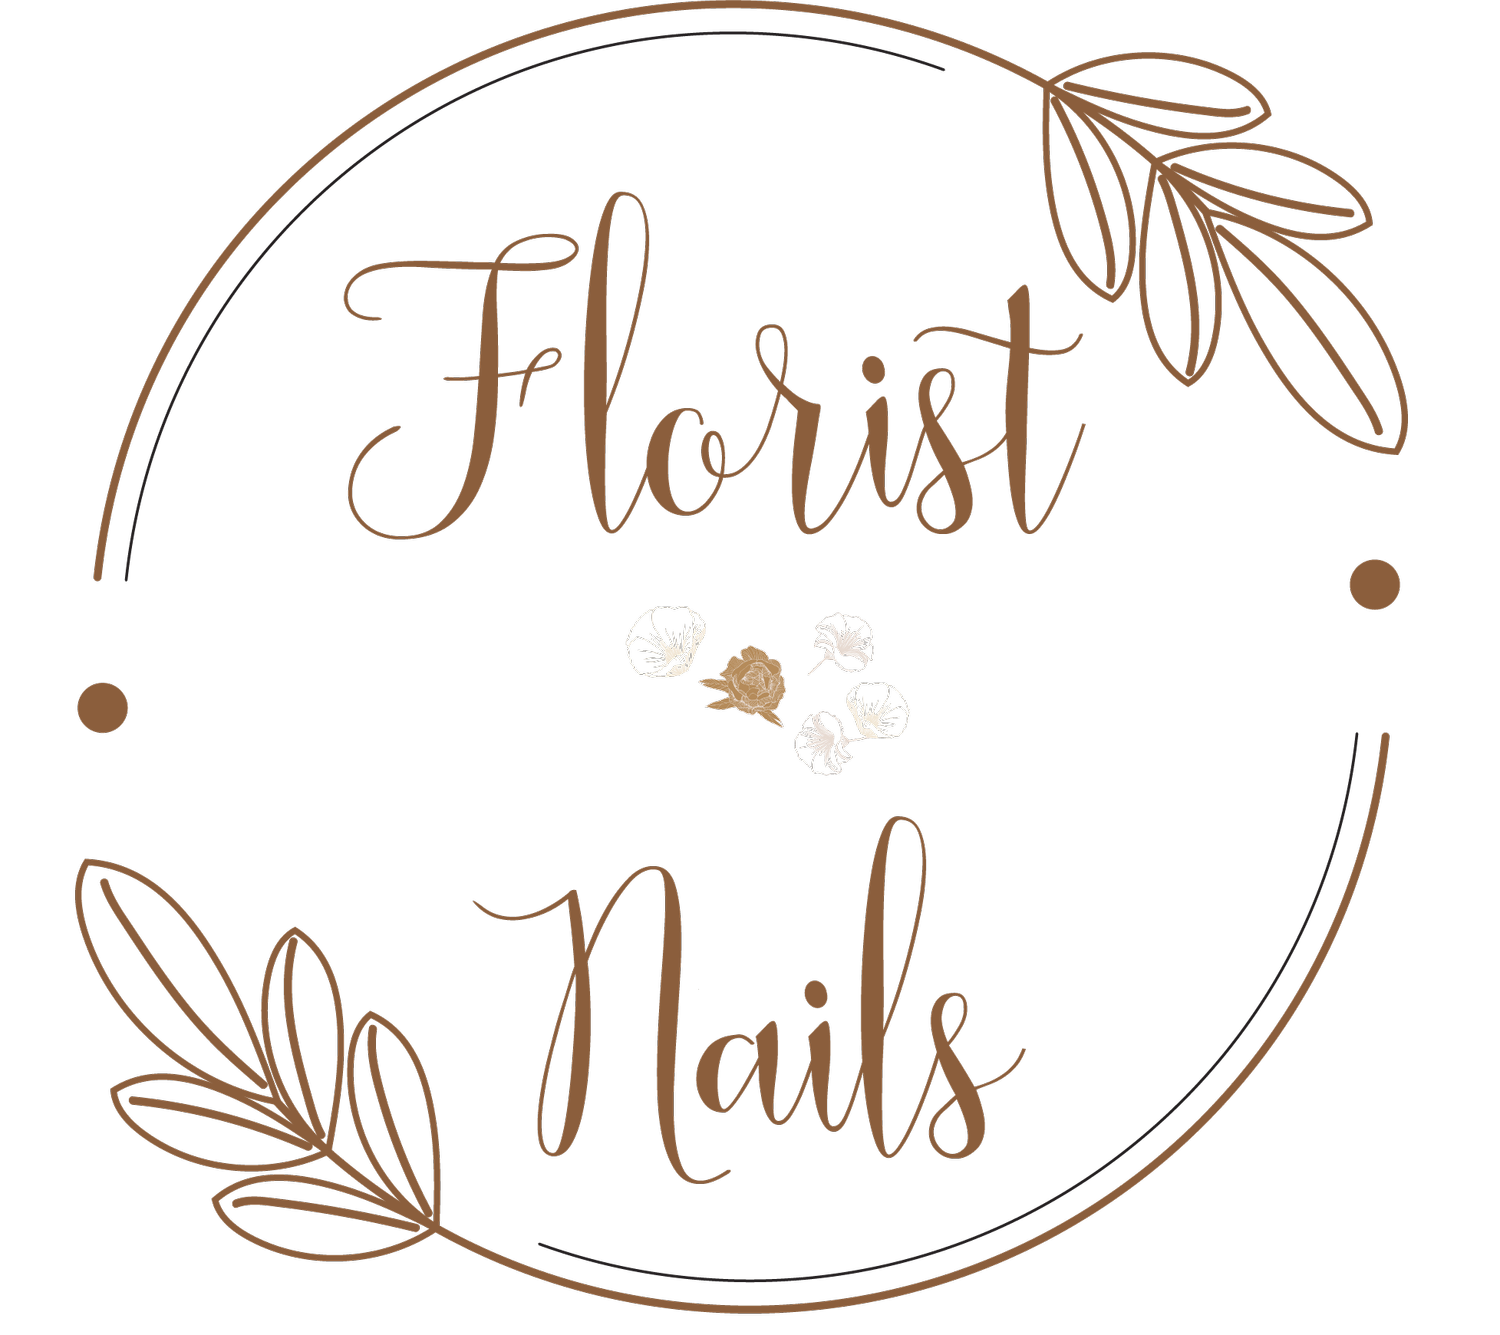 Florist Nails